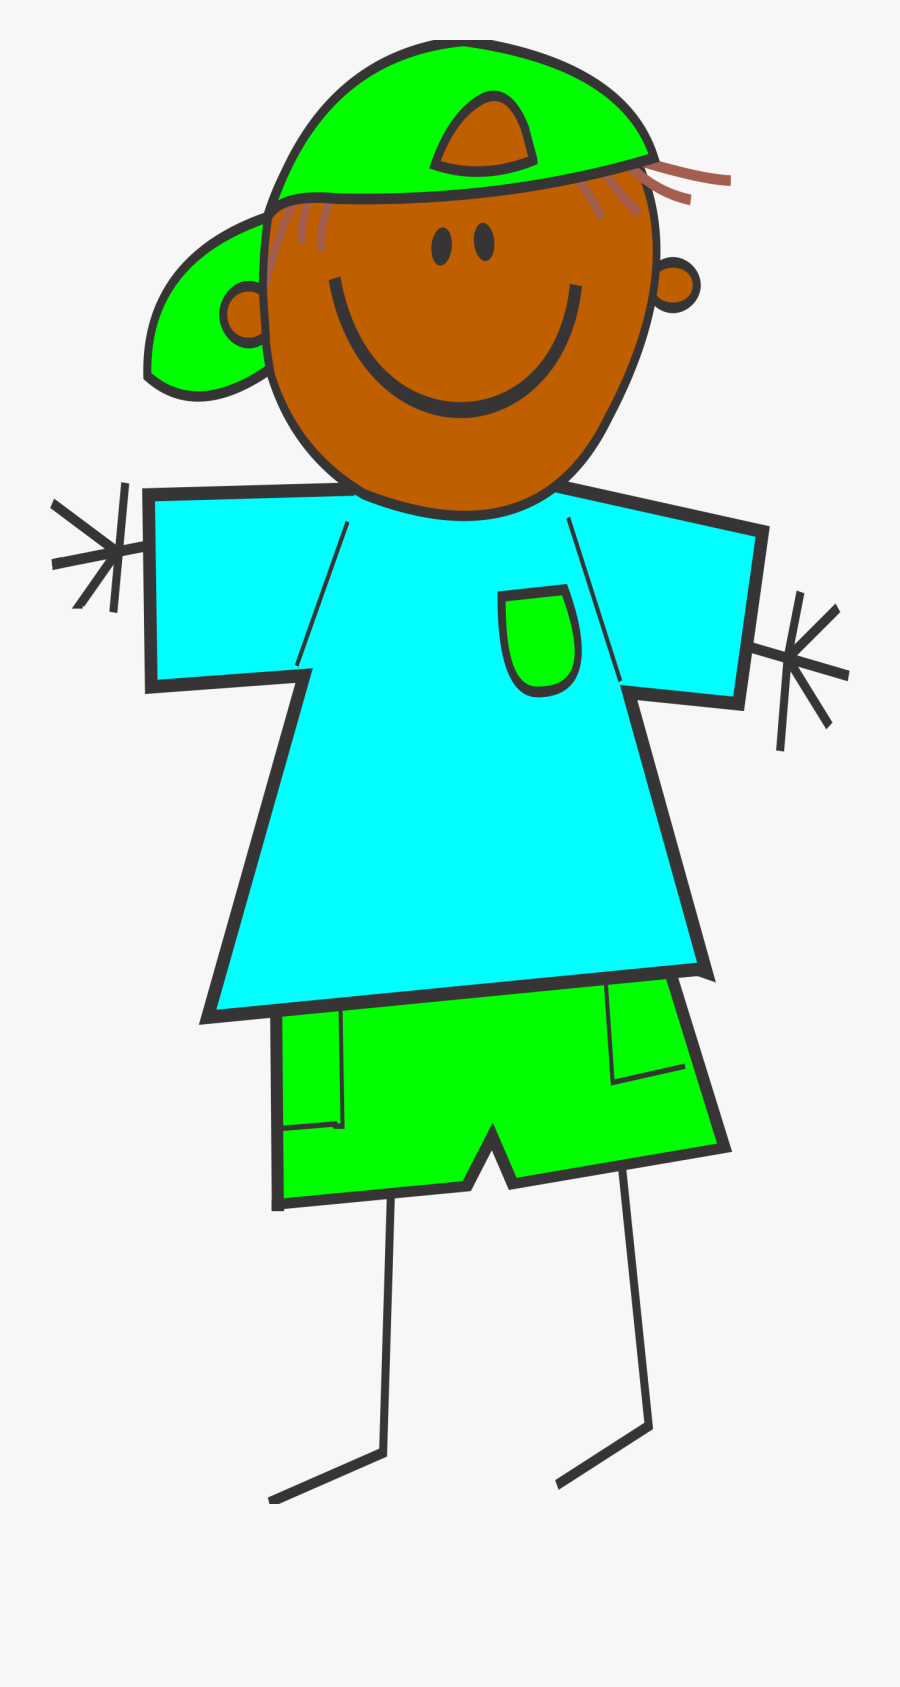 Skin Clipart Boy - Cartoon Stick Figure Boy, Transparent Clipart